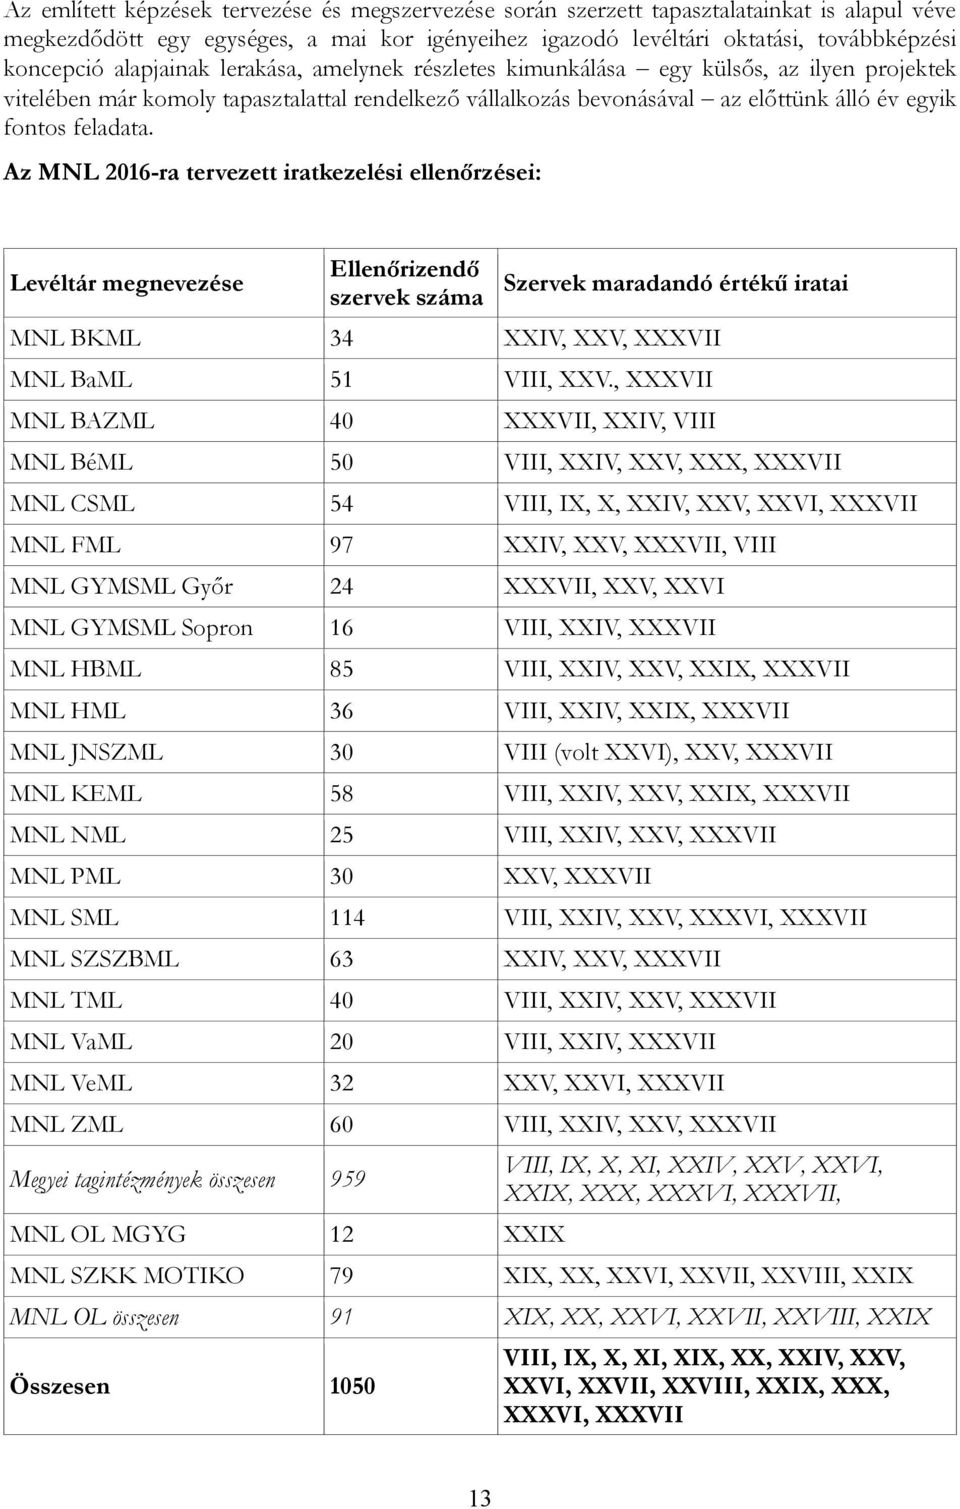 Az MNL 2016-ra tervezett iratkezelési ellenőrzései: Levéltár megnevezése Ellenőrizendő szervek száma Szervek maradandó értékű iratai MNL BKML 34 XXIV, XXV, XXXVII MNL BaML 51 VIII, XXV.